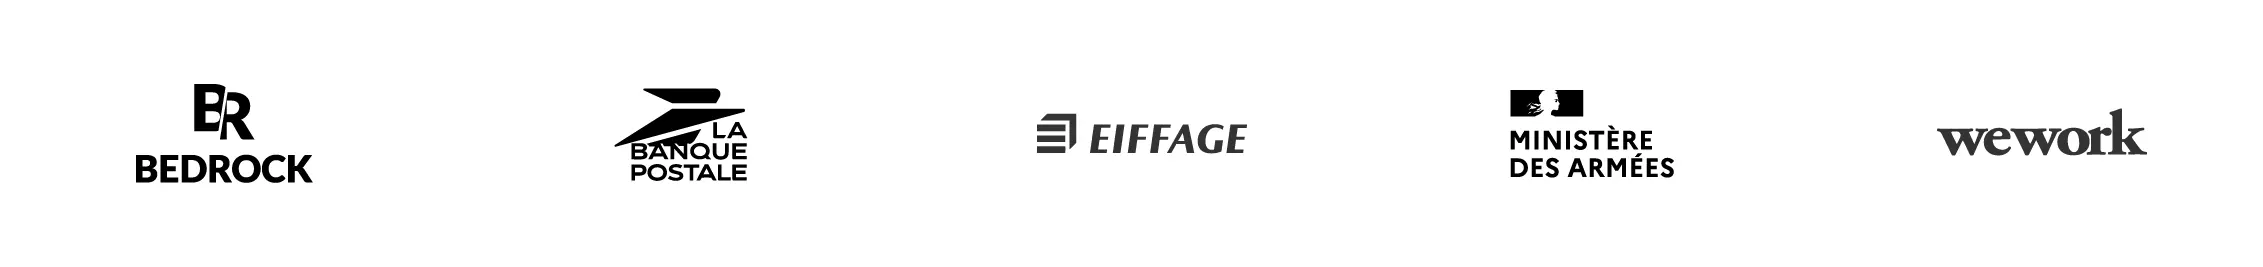 Logo client eiffage